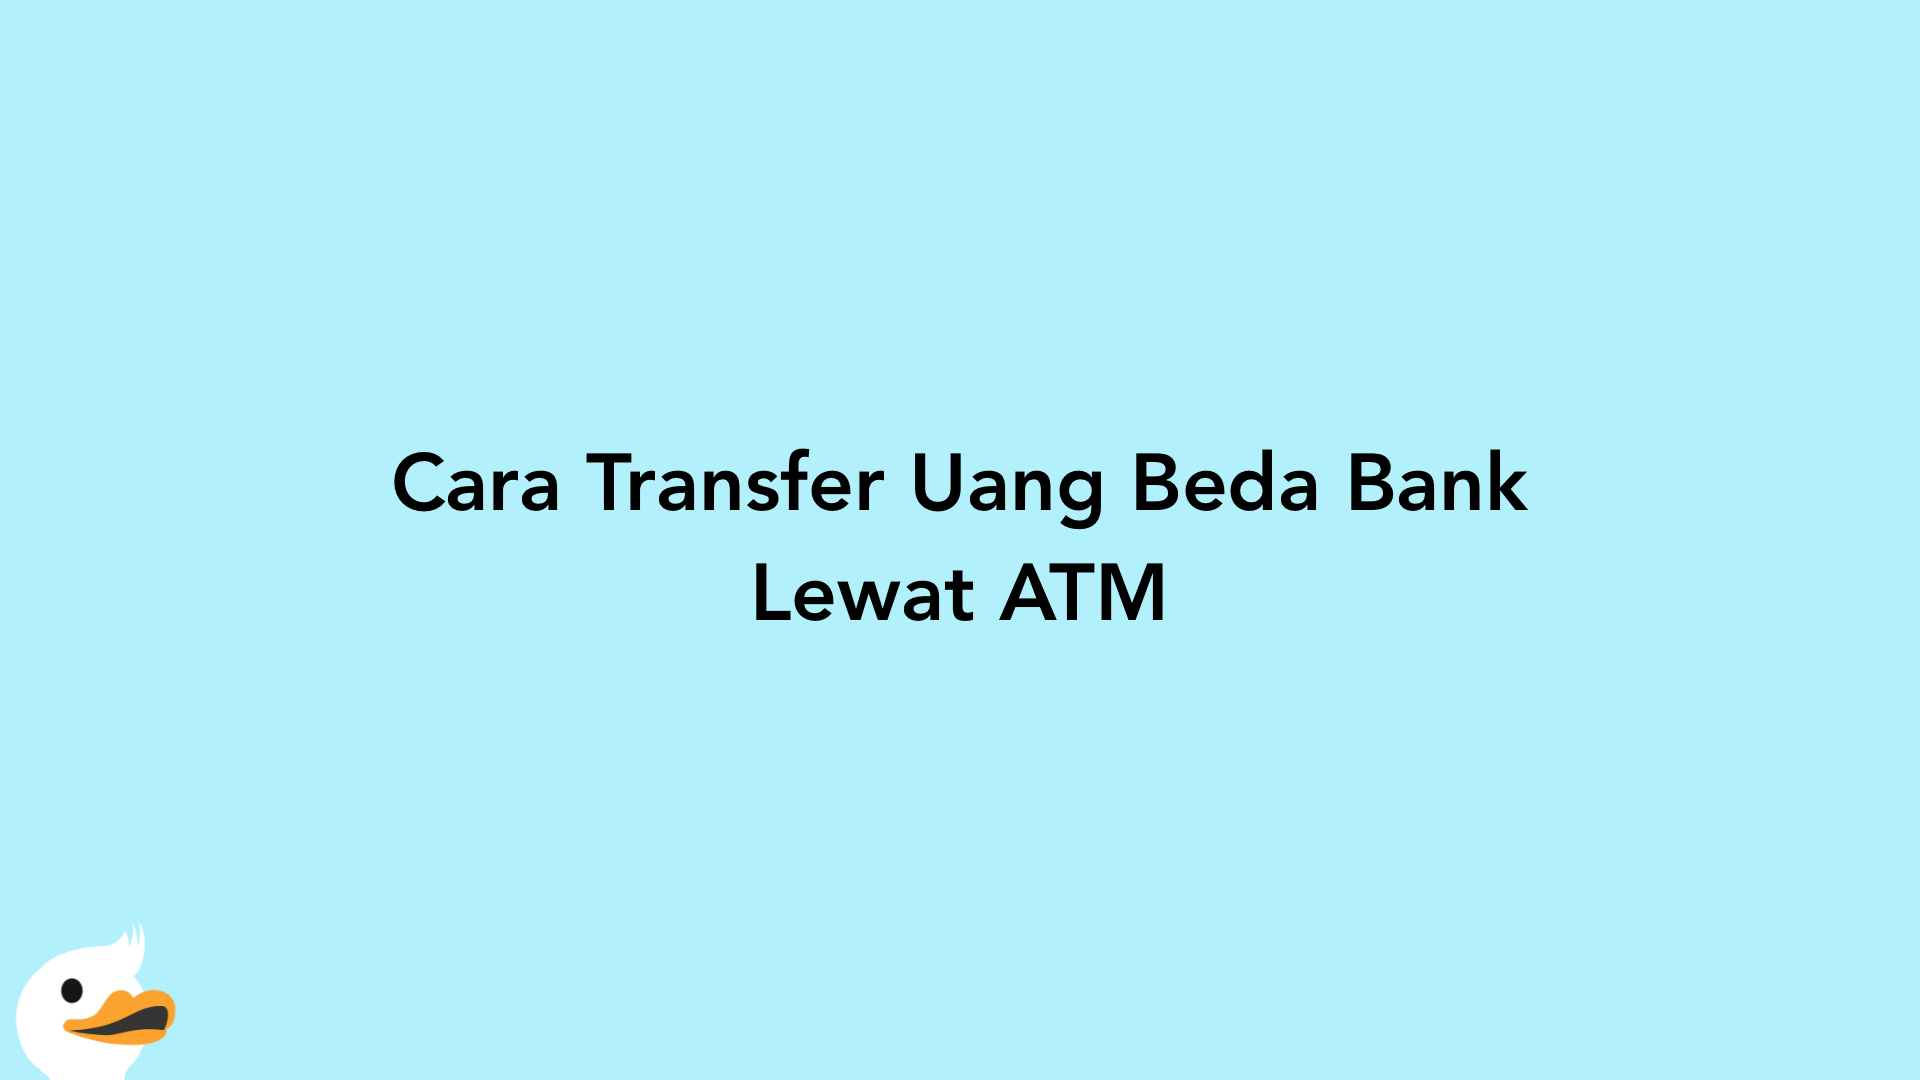 Cara Transfer Uang Beda Bank Lewat ATM